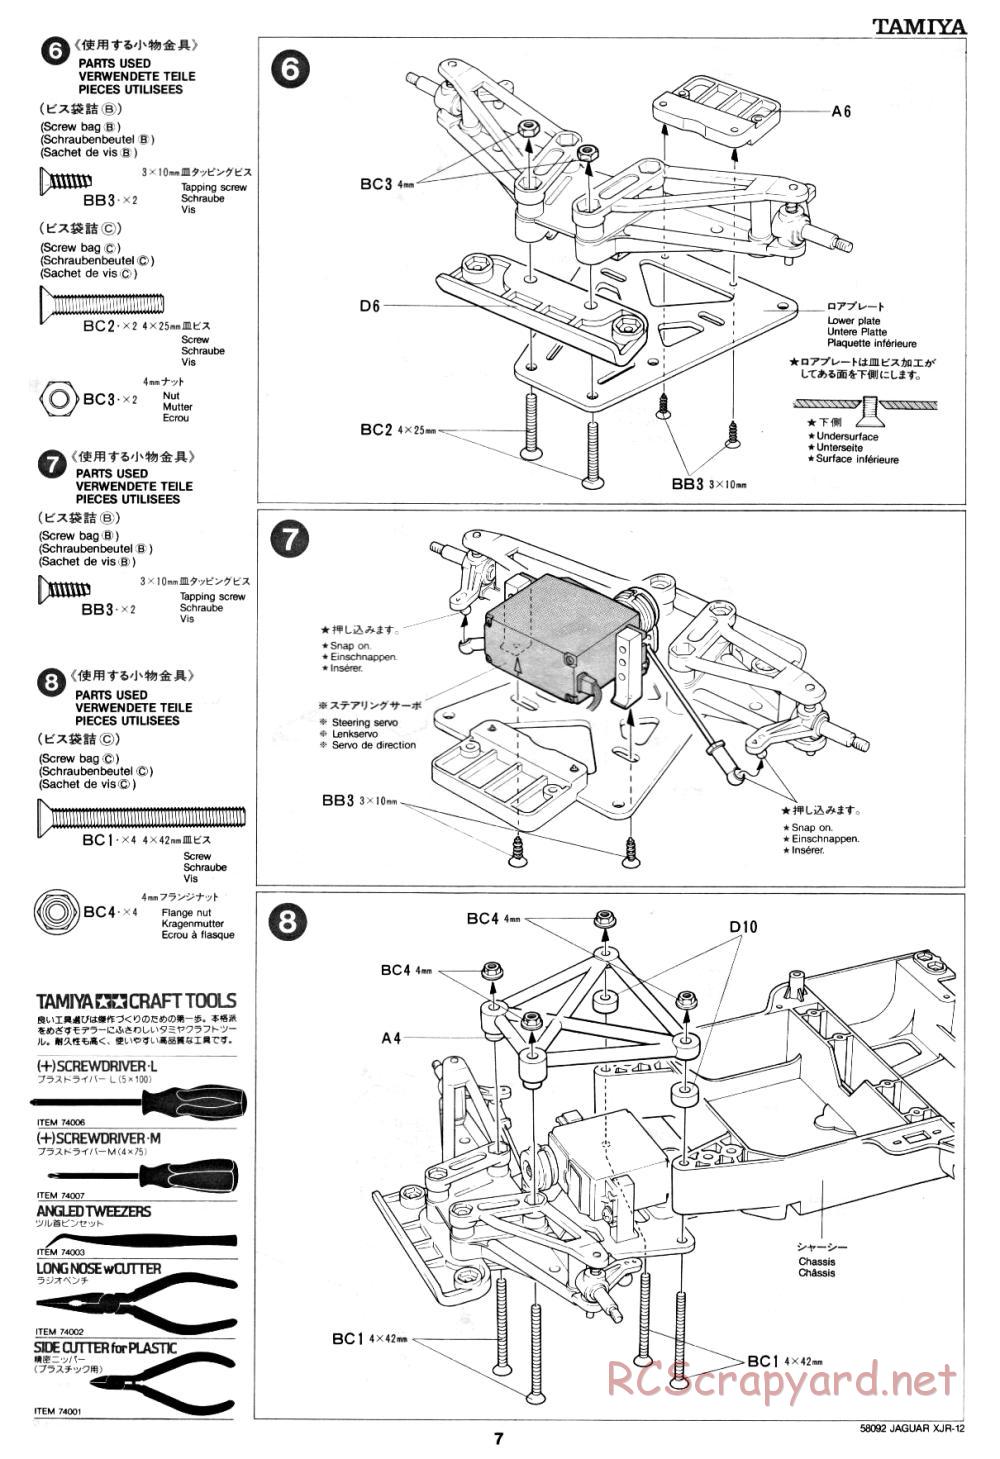 Tamiya - Jaguar XJR-12 - 58092 - Manual - Page 7